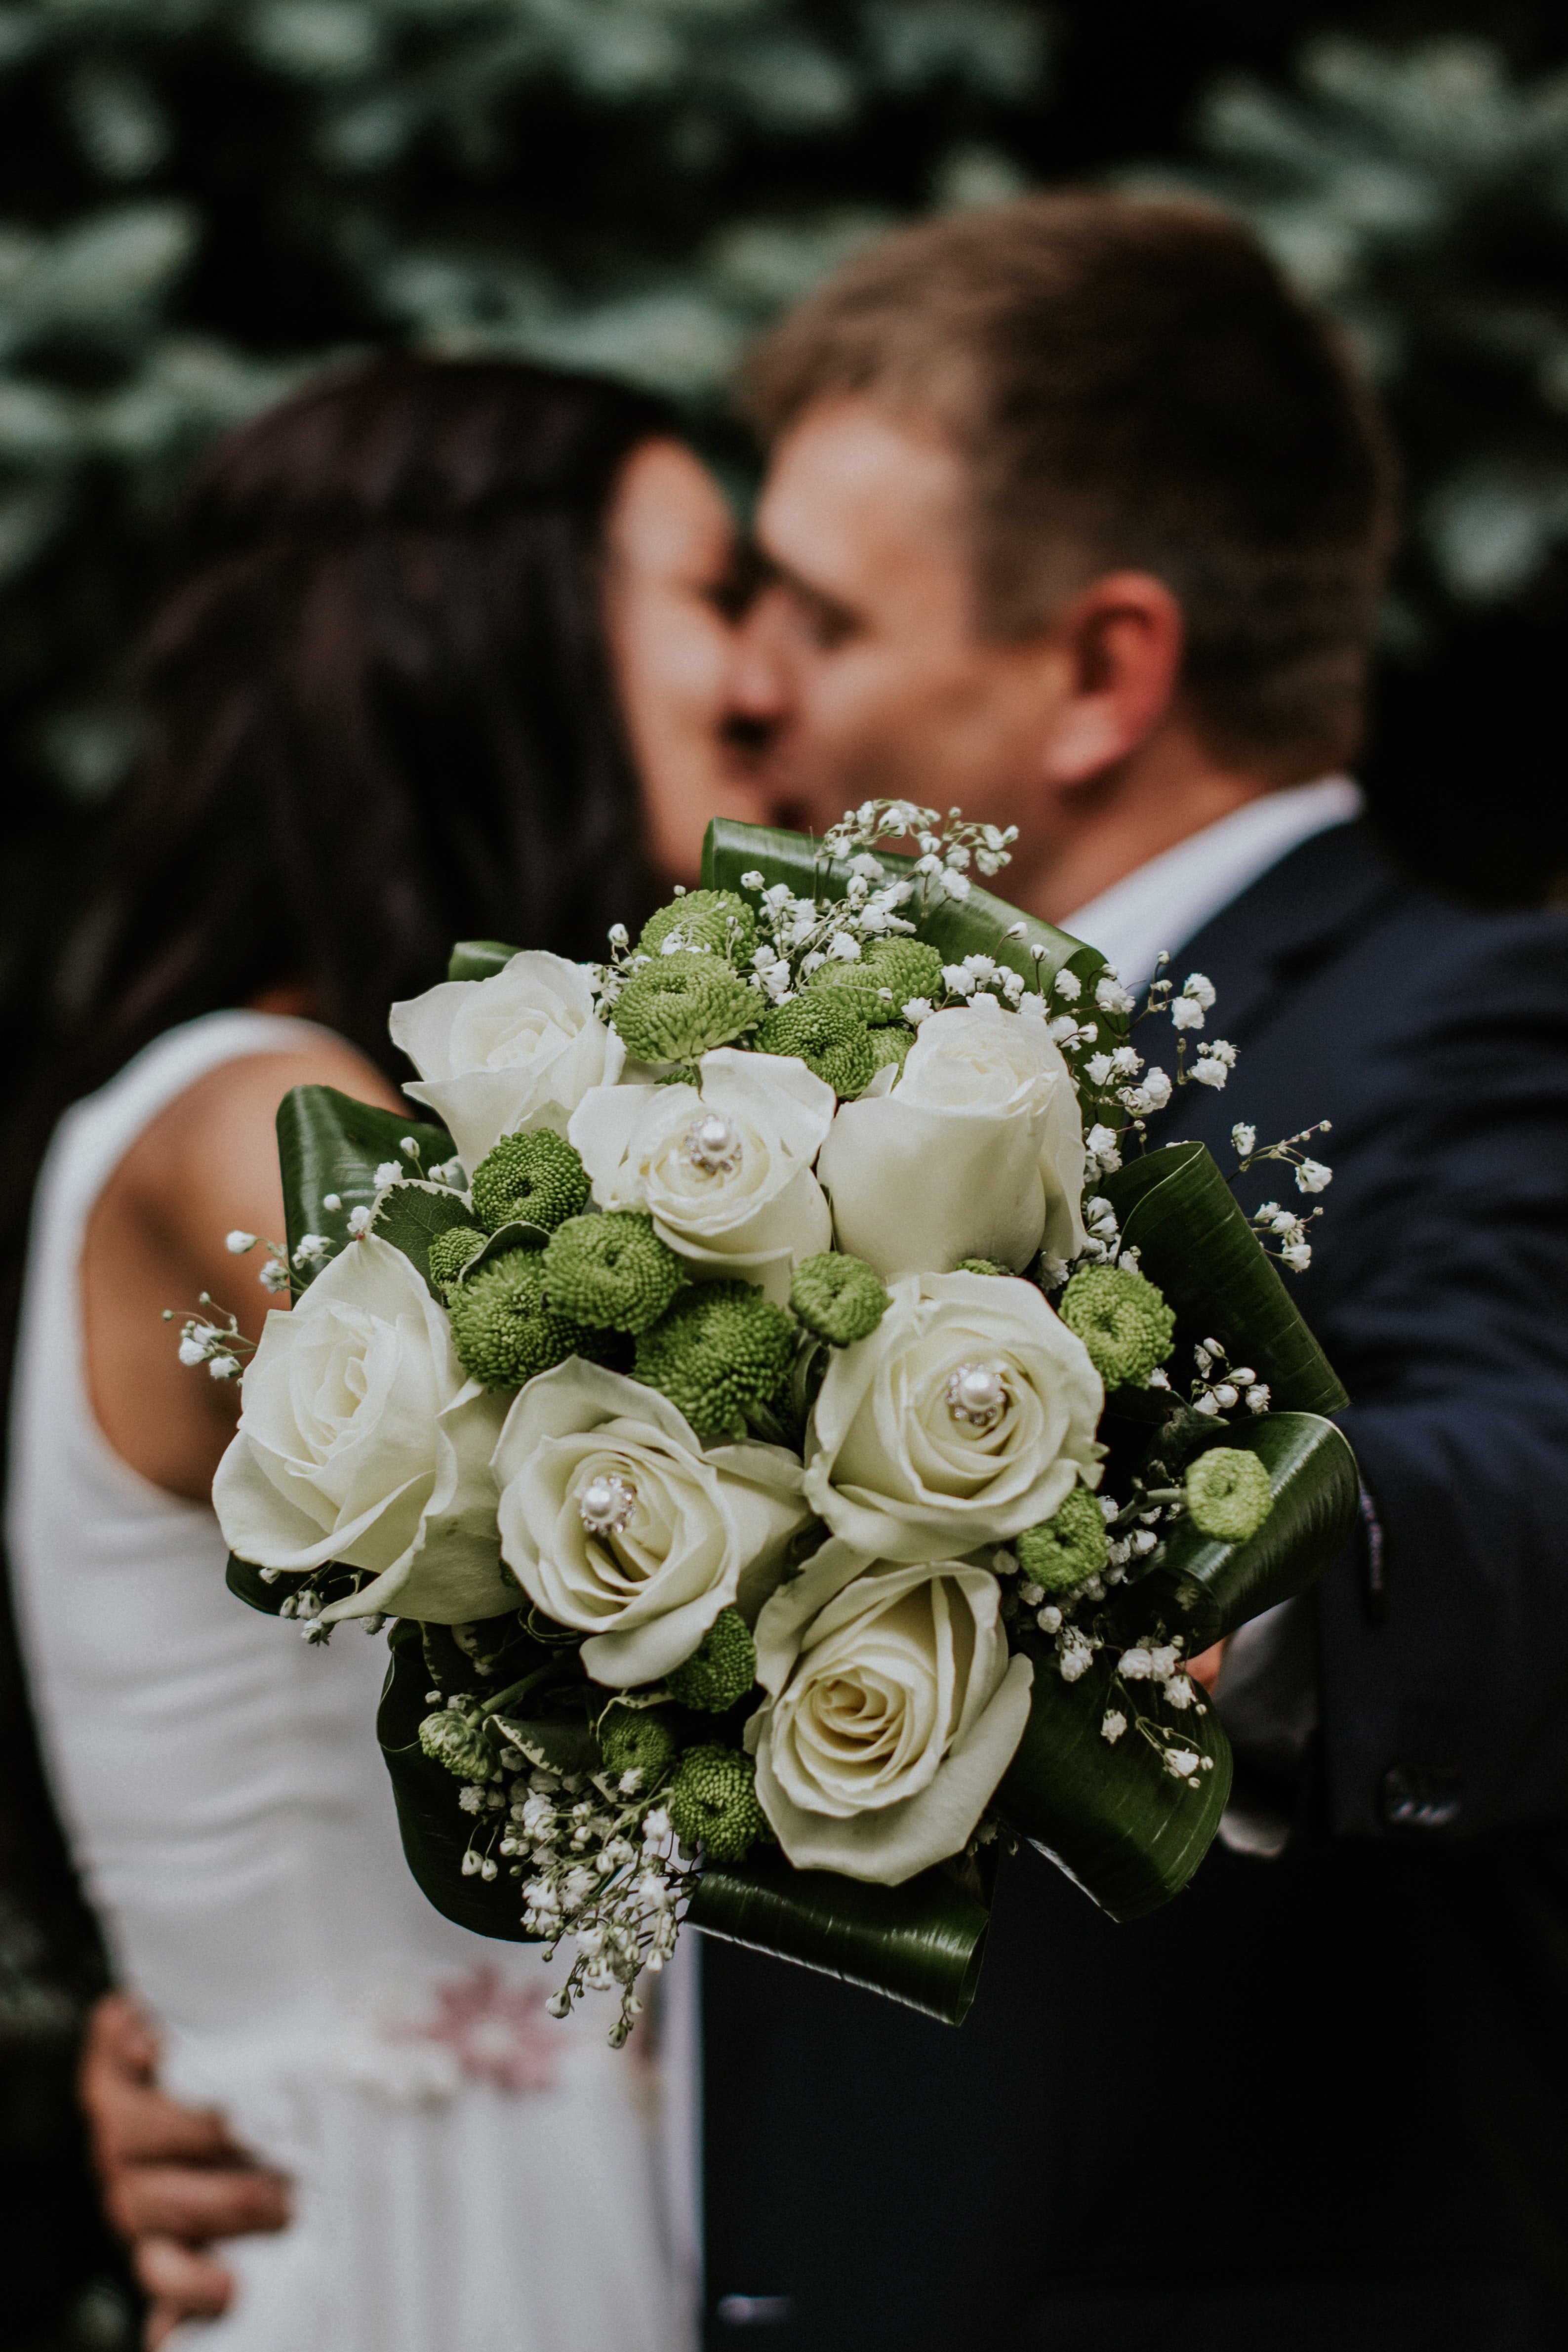 Hochzeitspaar küsst | Quelle: Pexels